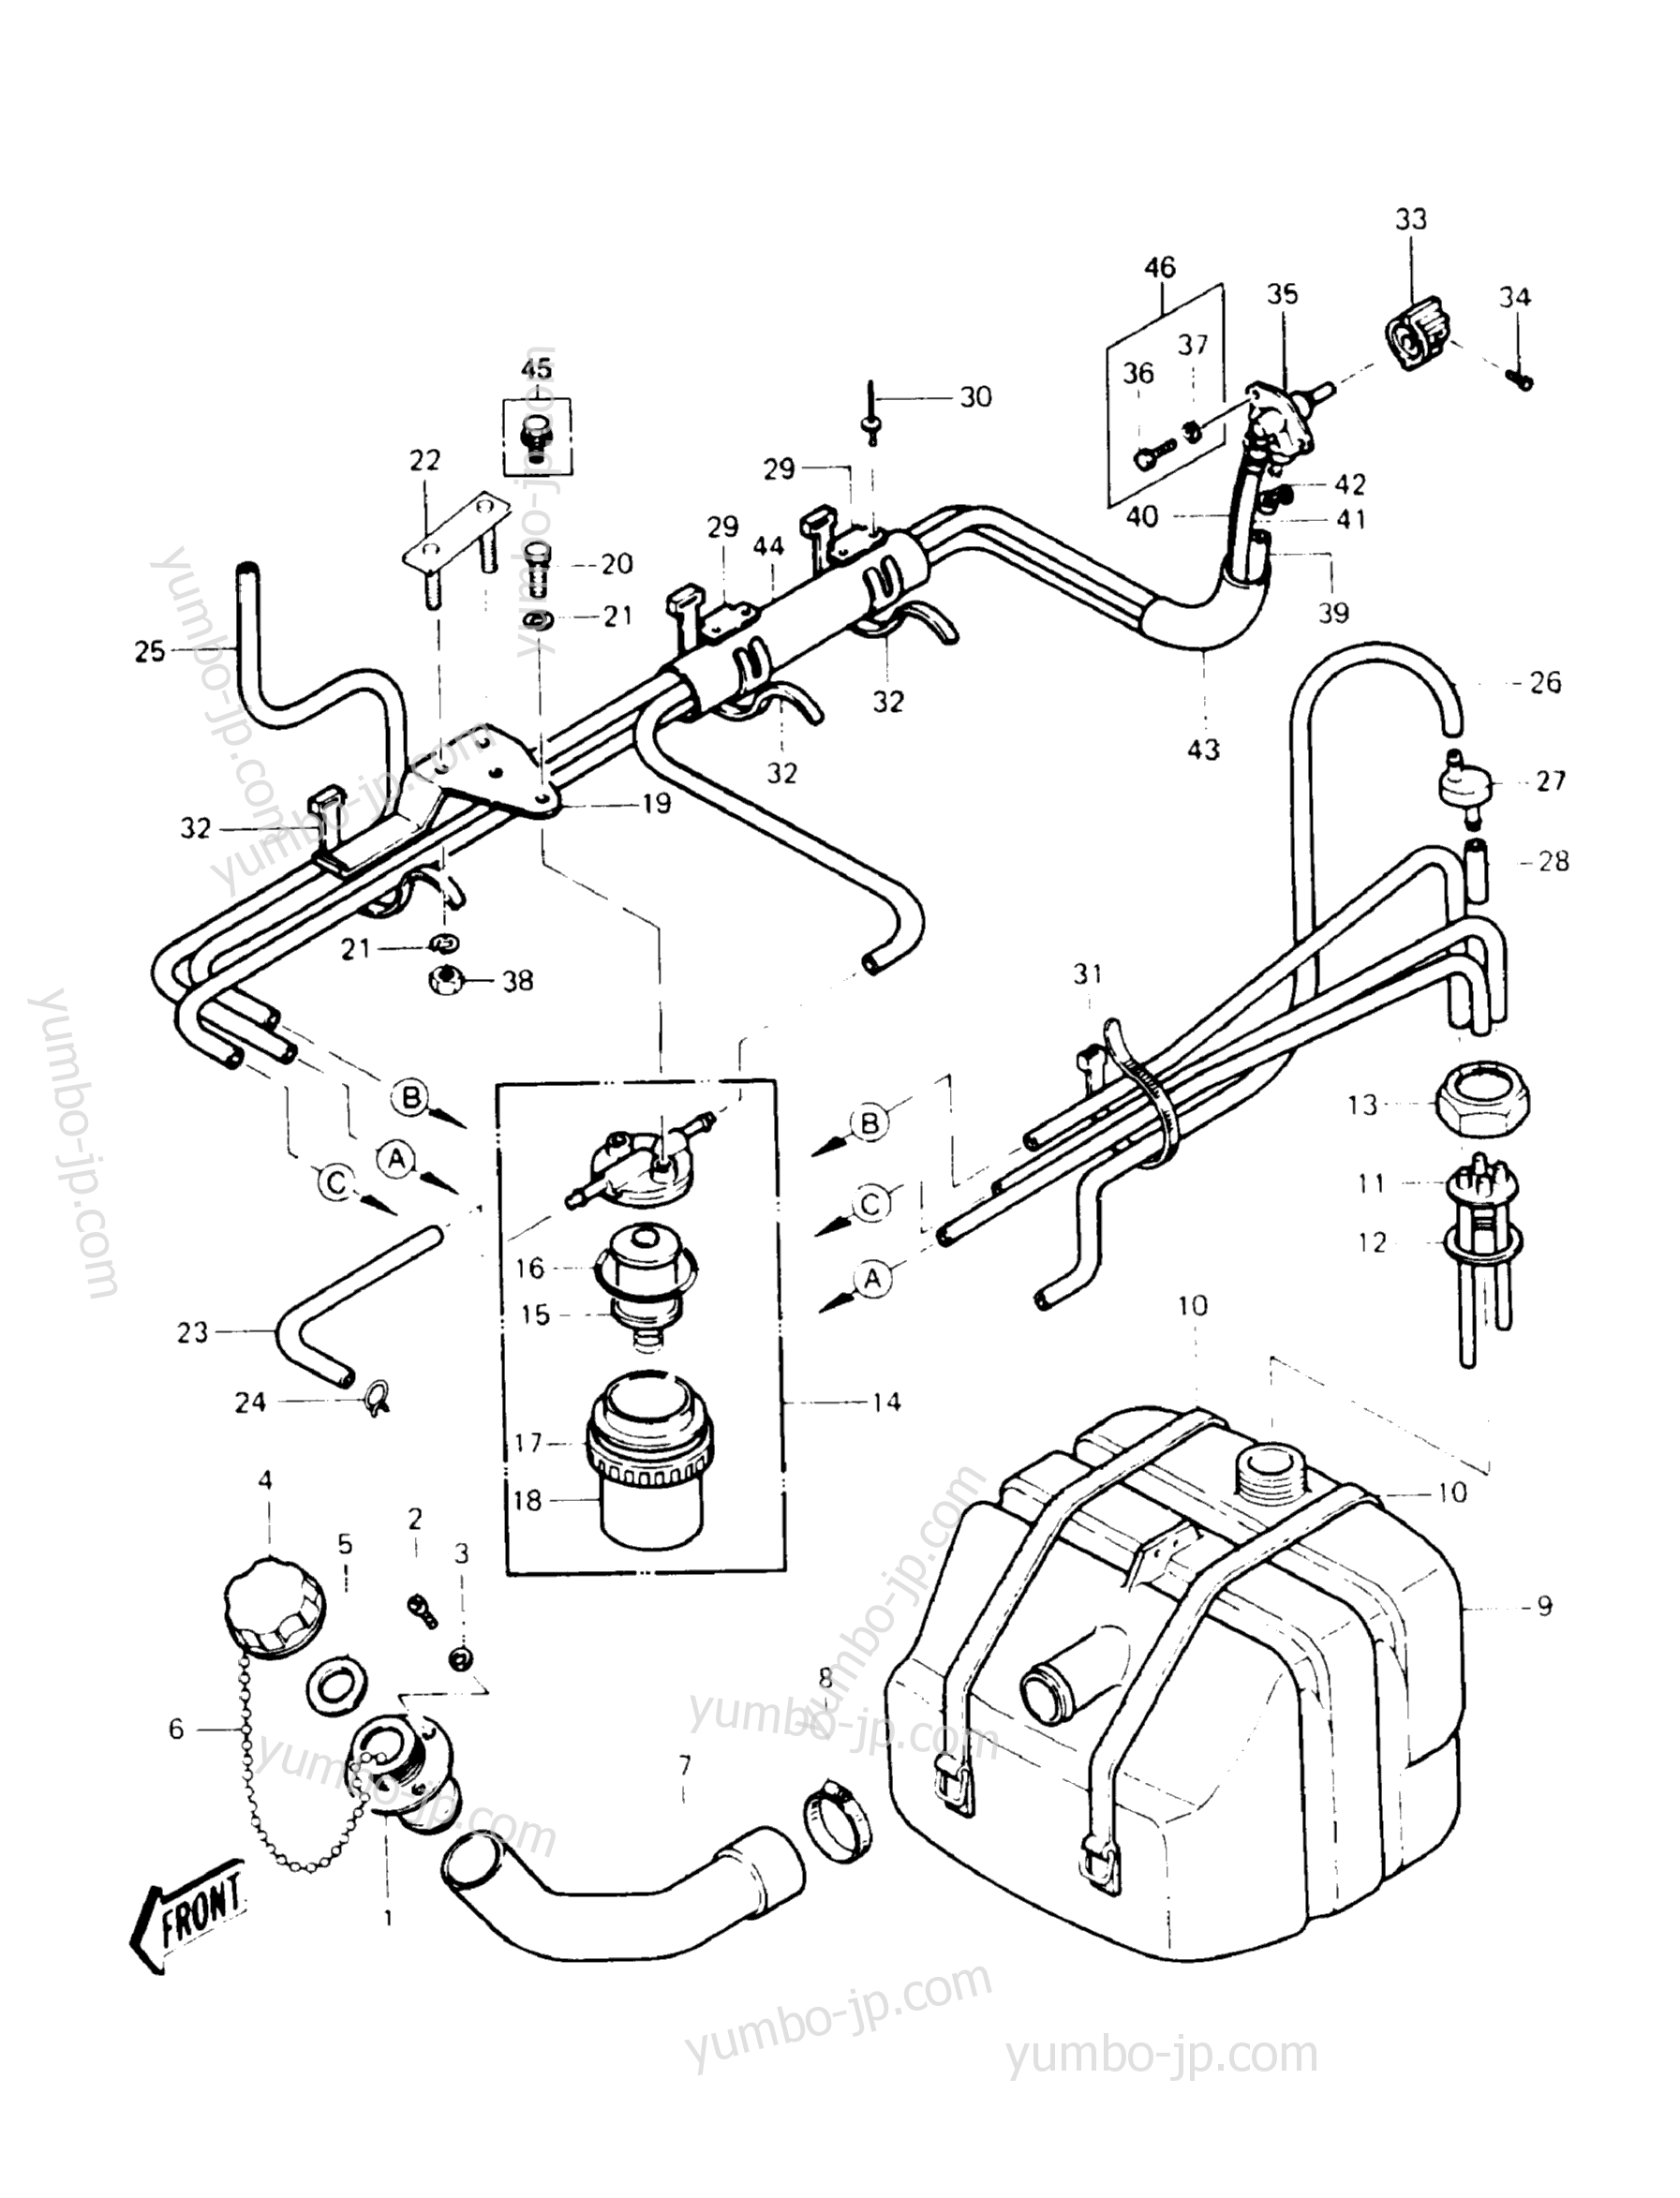 Топливный бак для гидроциклов KAWASAKI JST SKI 440 (JS440-A14) 1990 г.